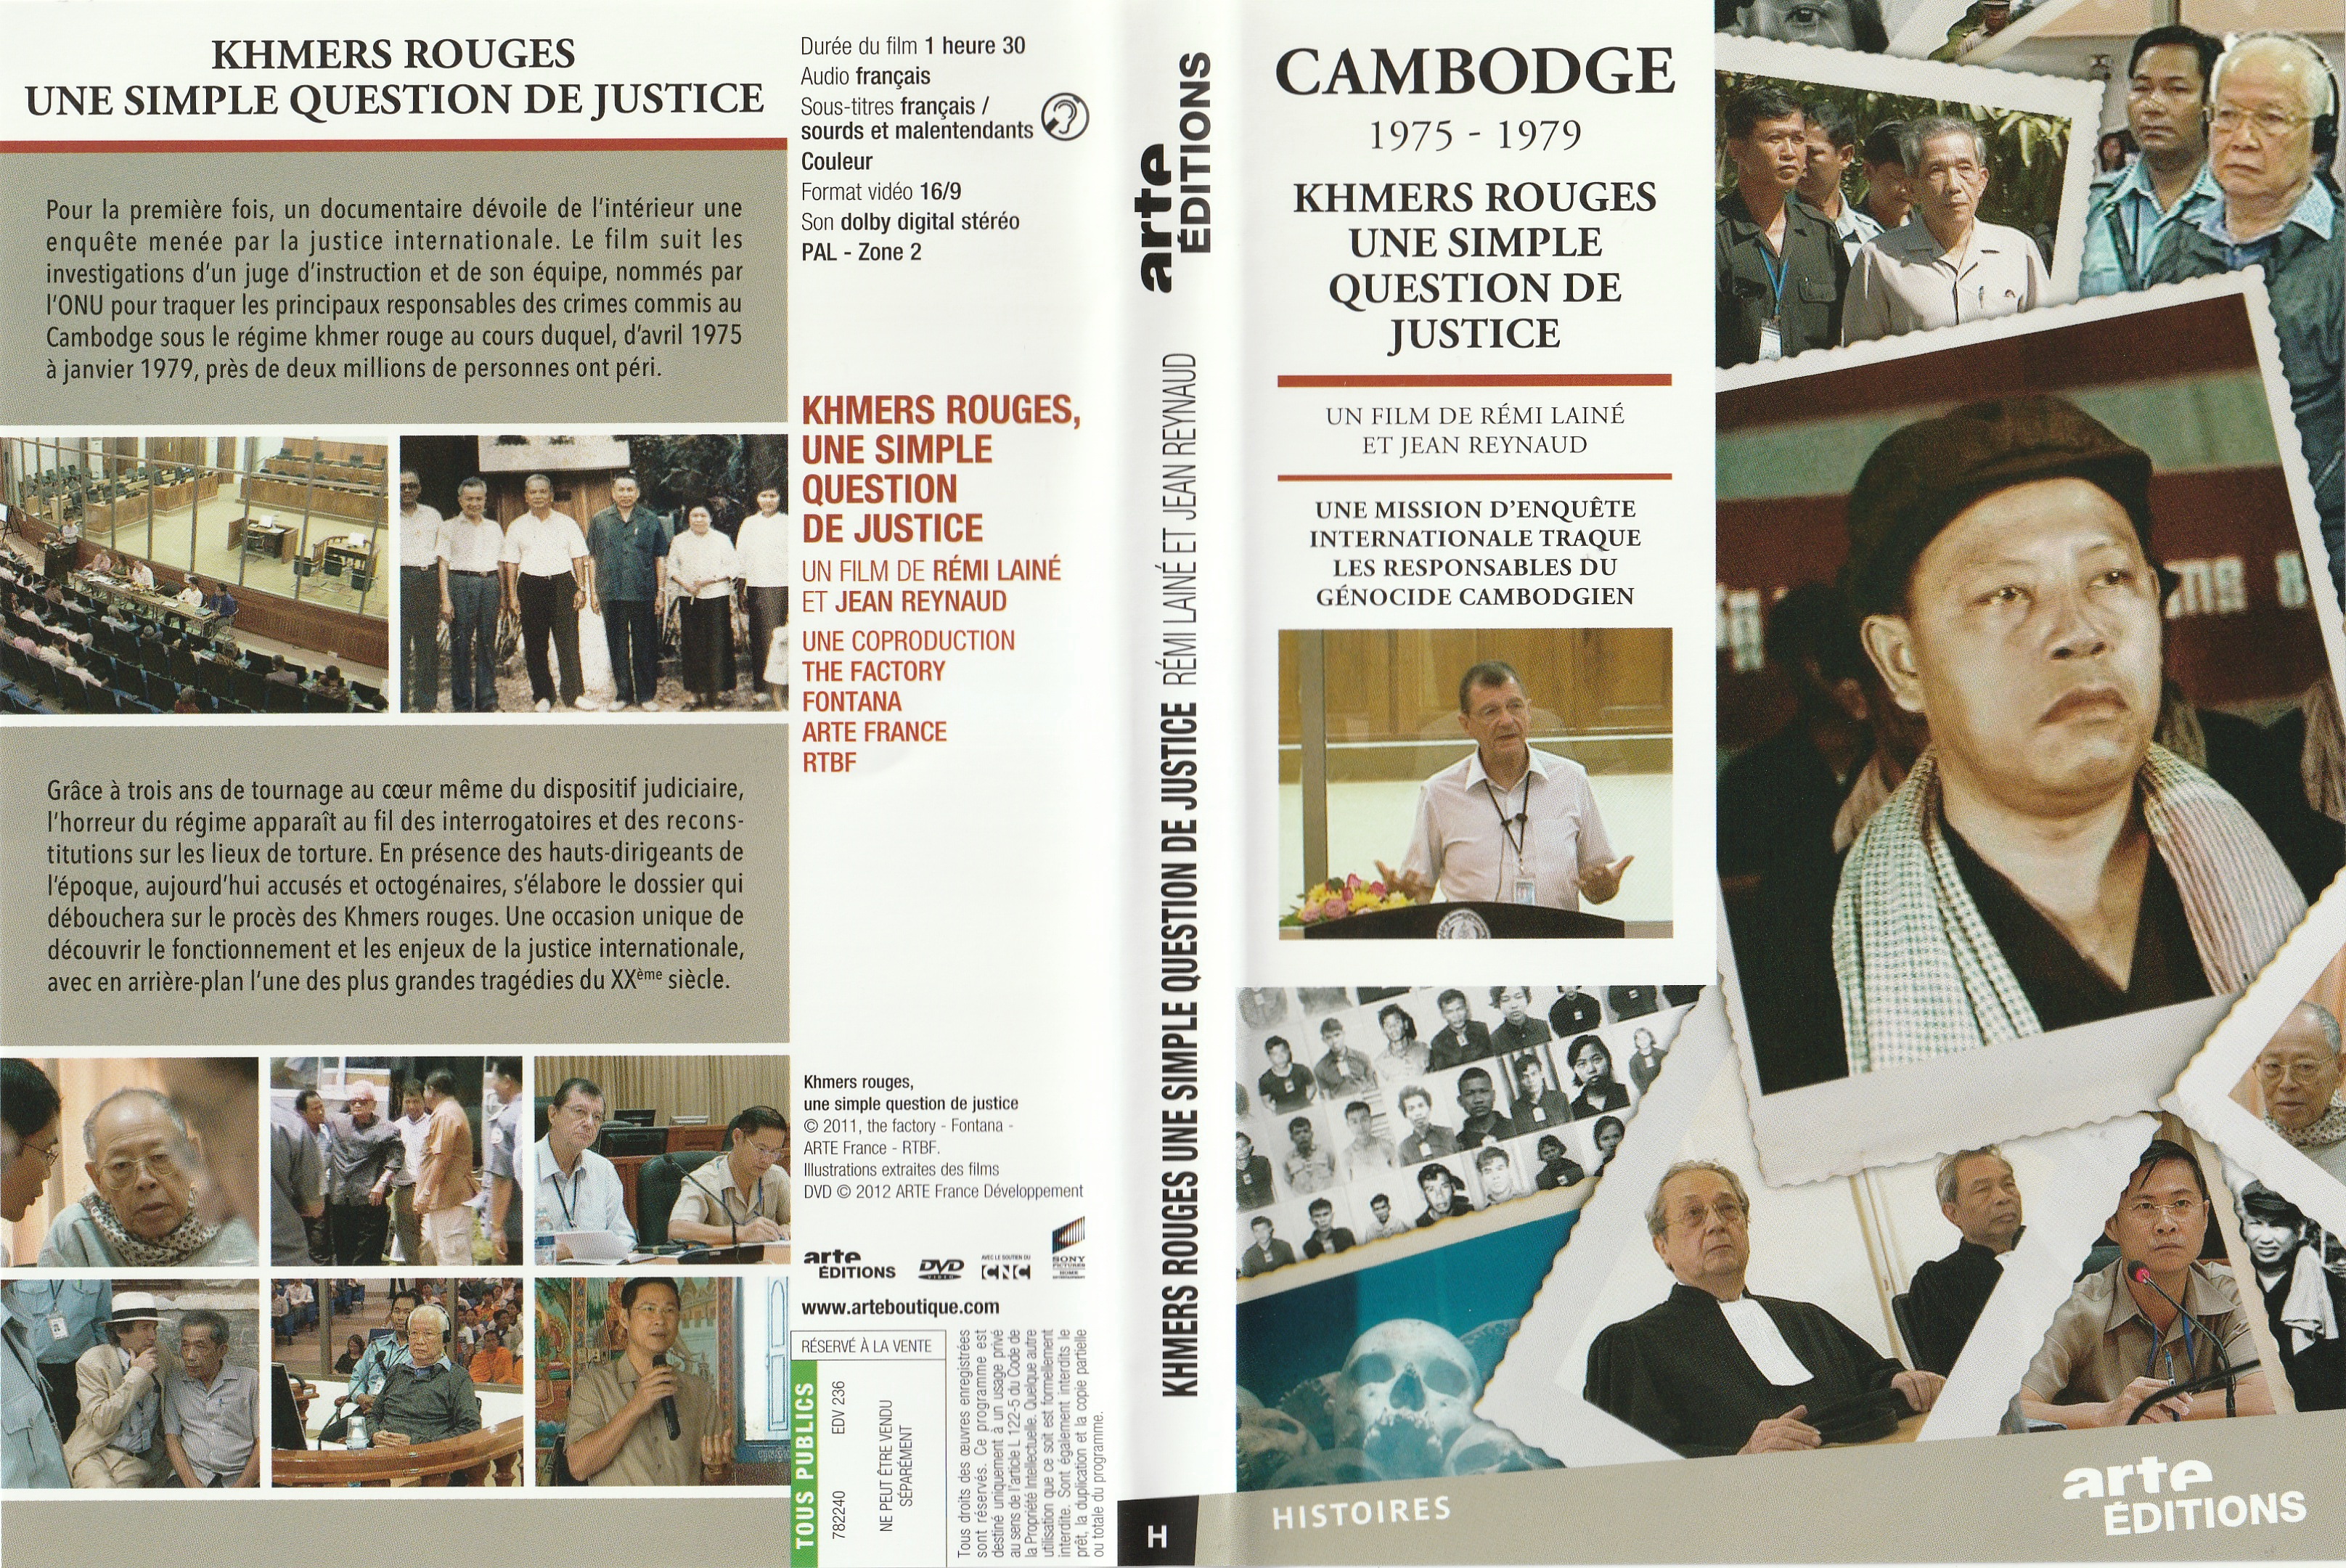 Jaquette DVD Cambodge 1975-1979 - Khmers rouges Une simple question de justice